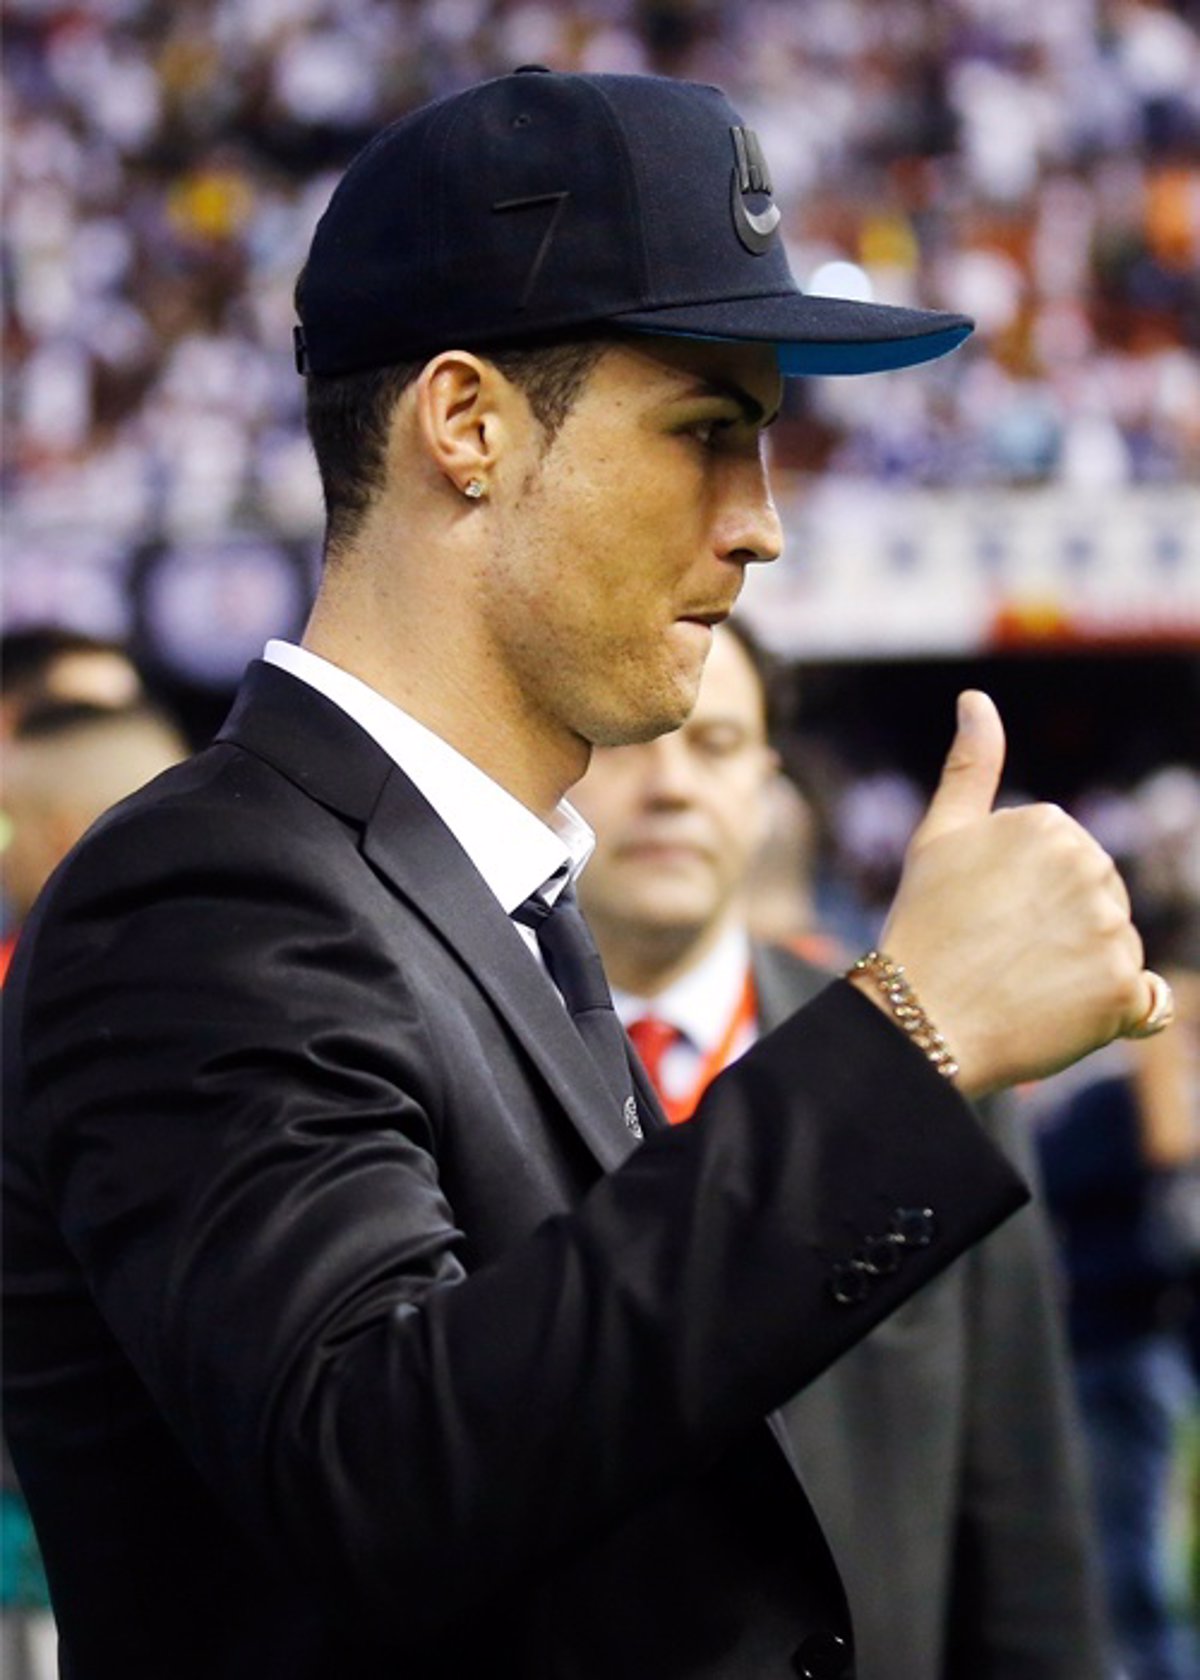 Gorra con la antítesis Cristiano Ronaldo